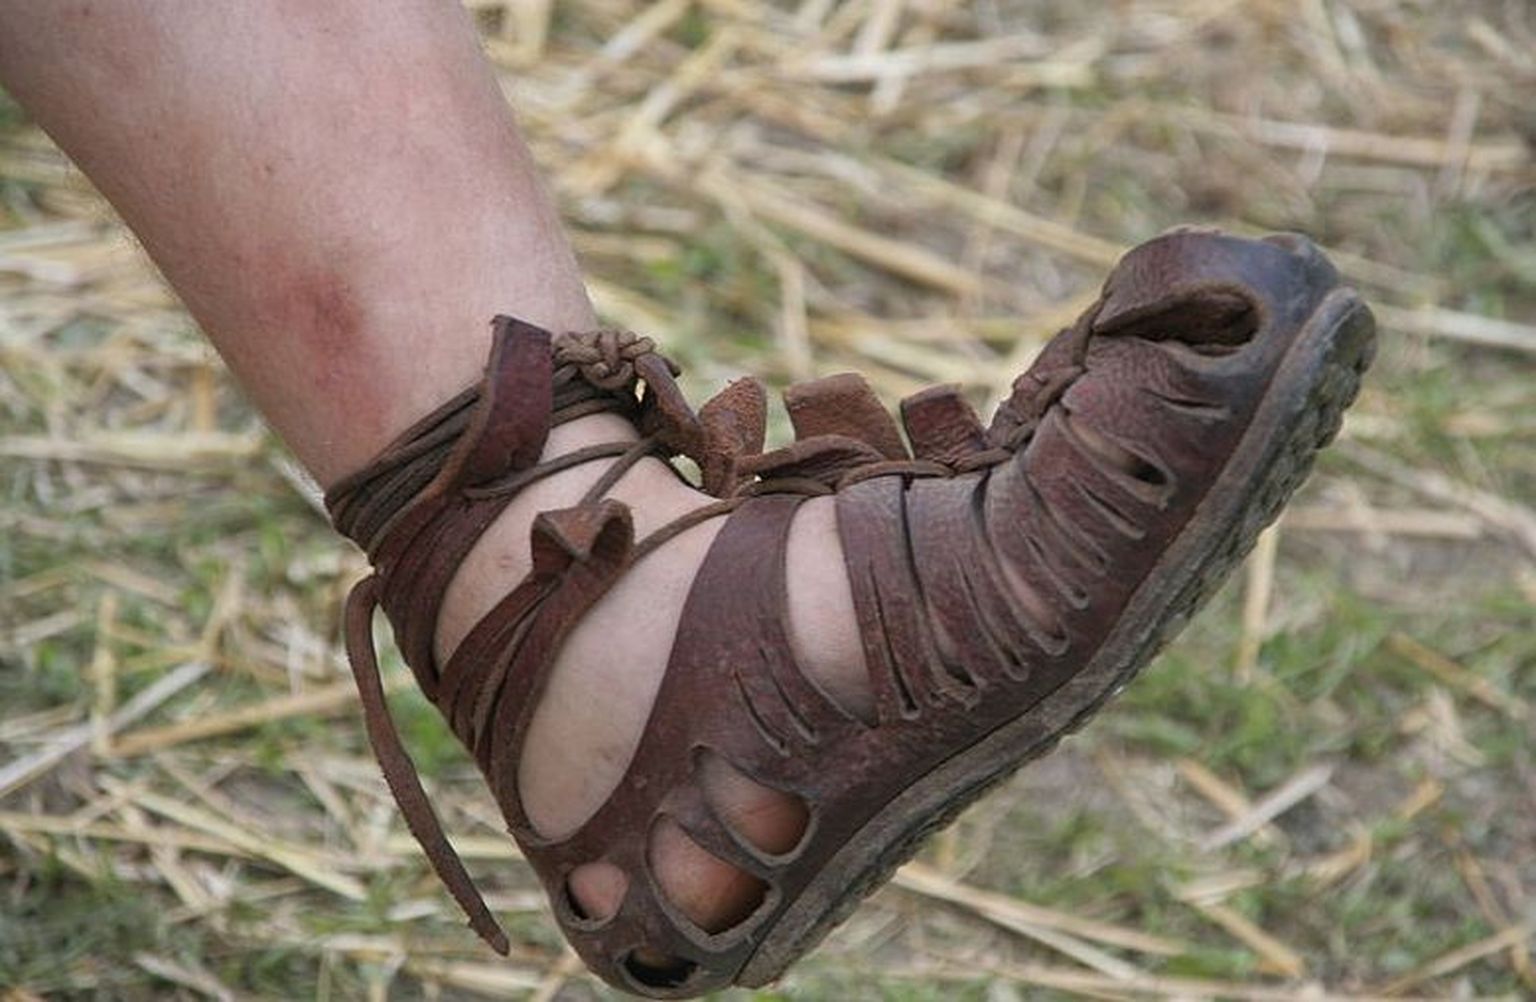 Vana-Rooma sandaal